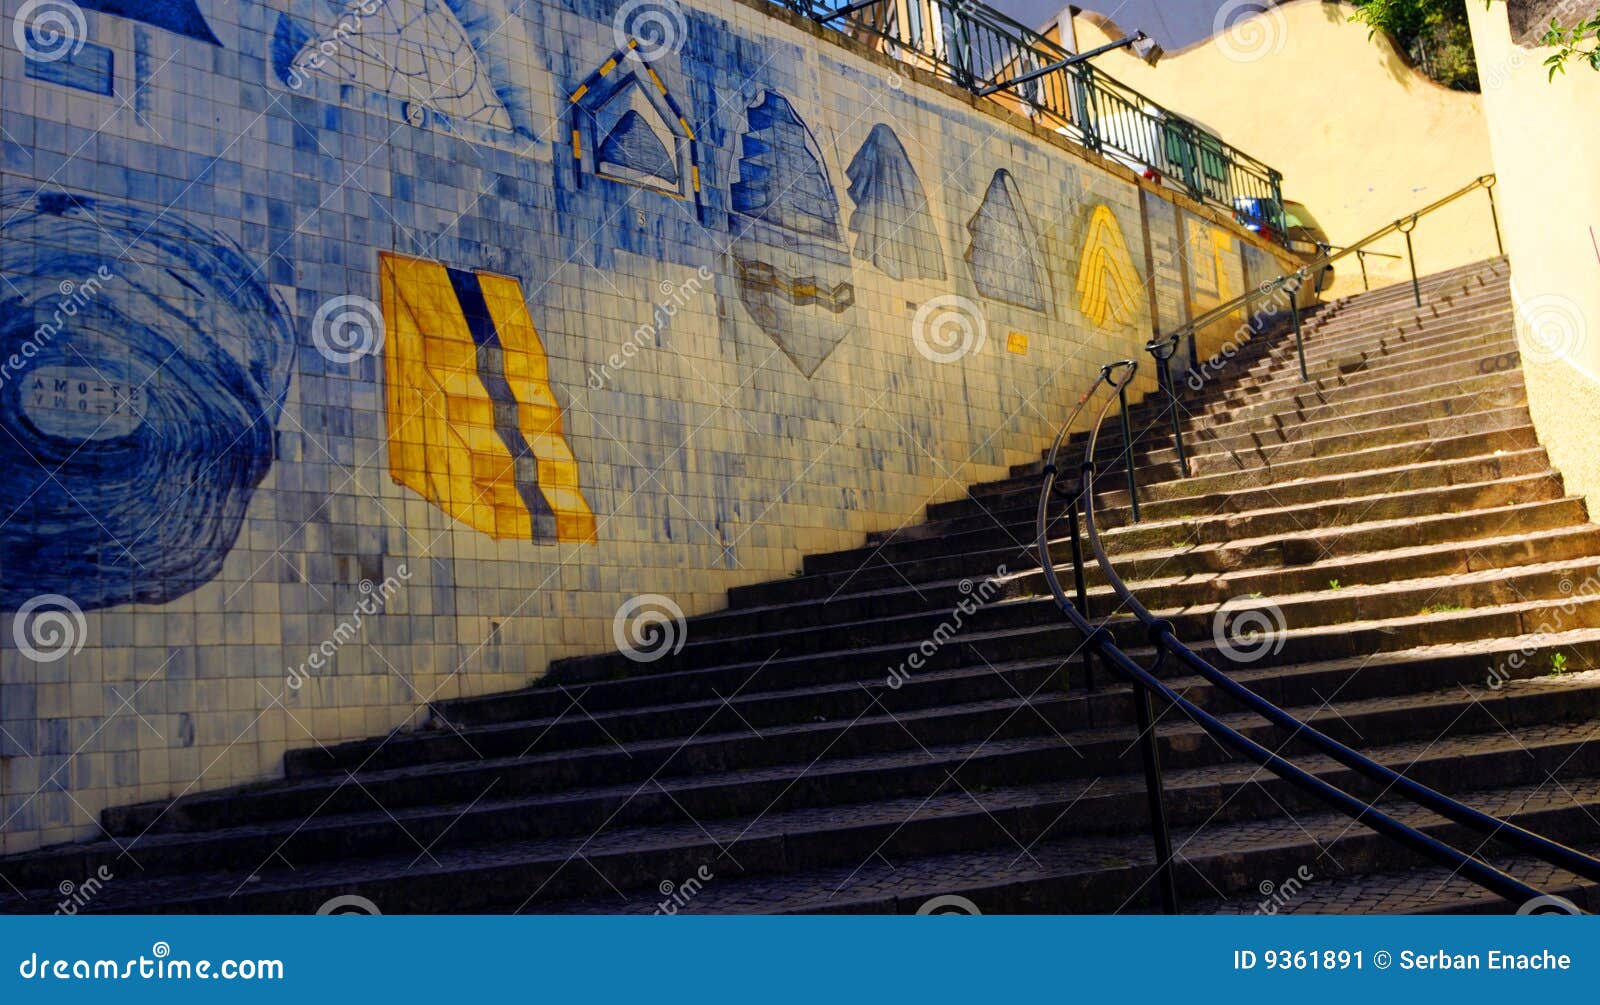 azulejo stairs